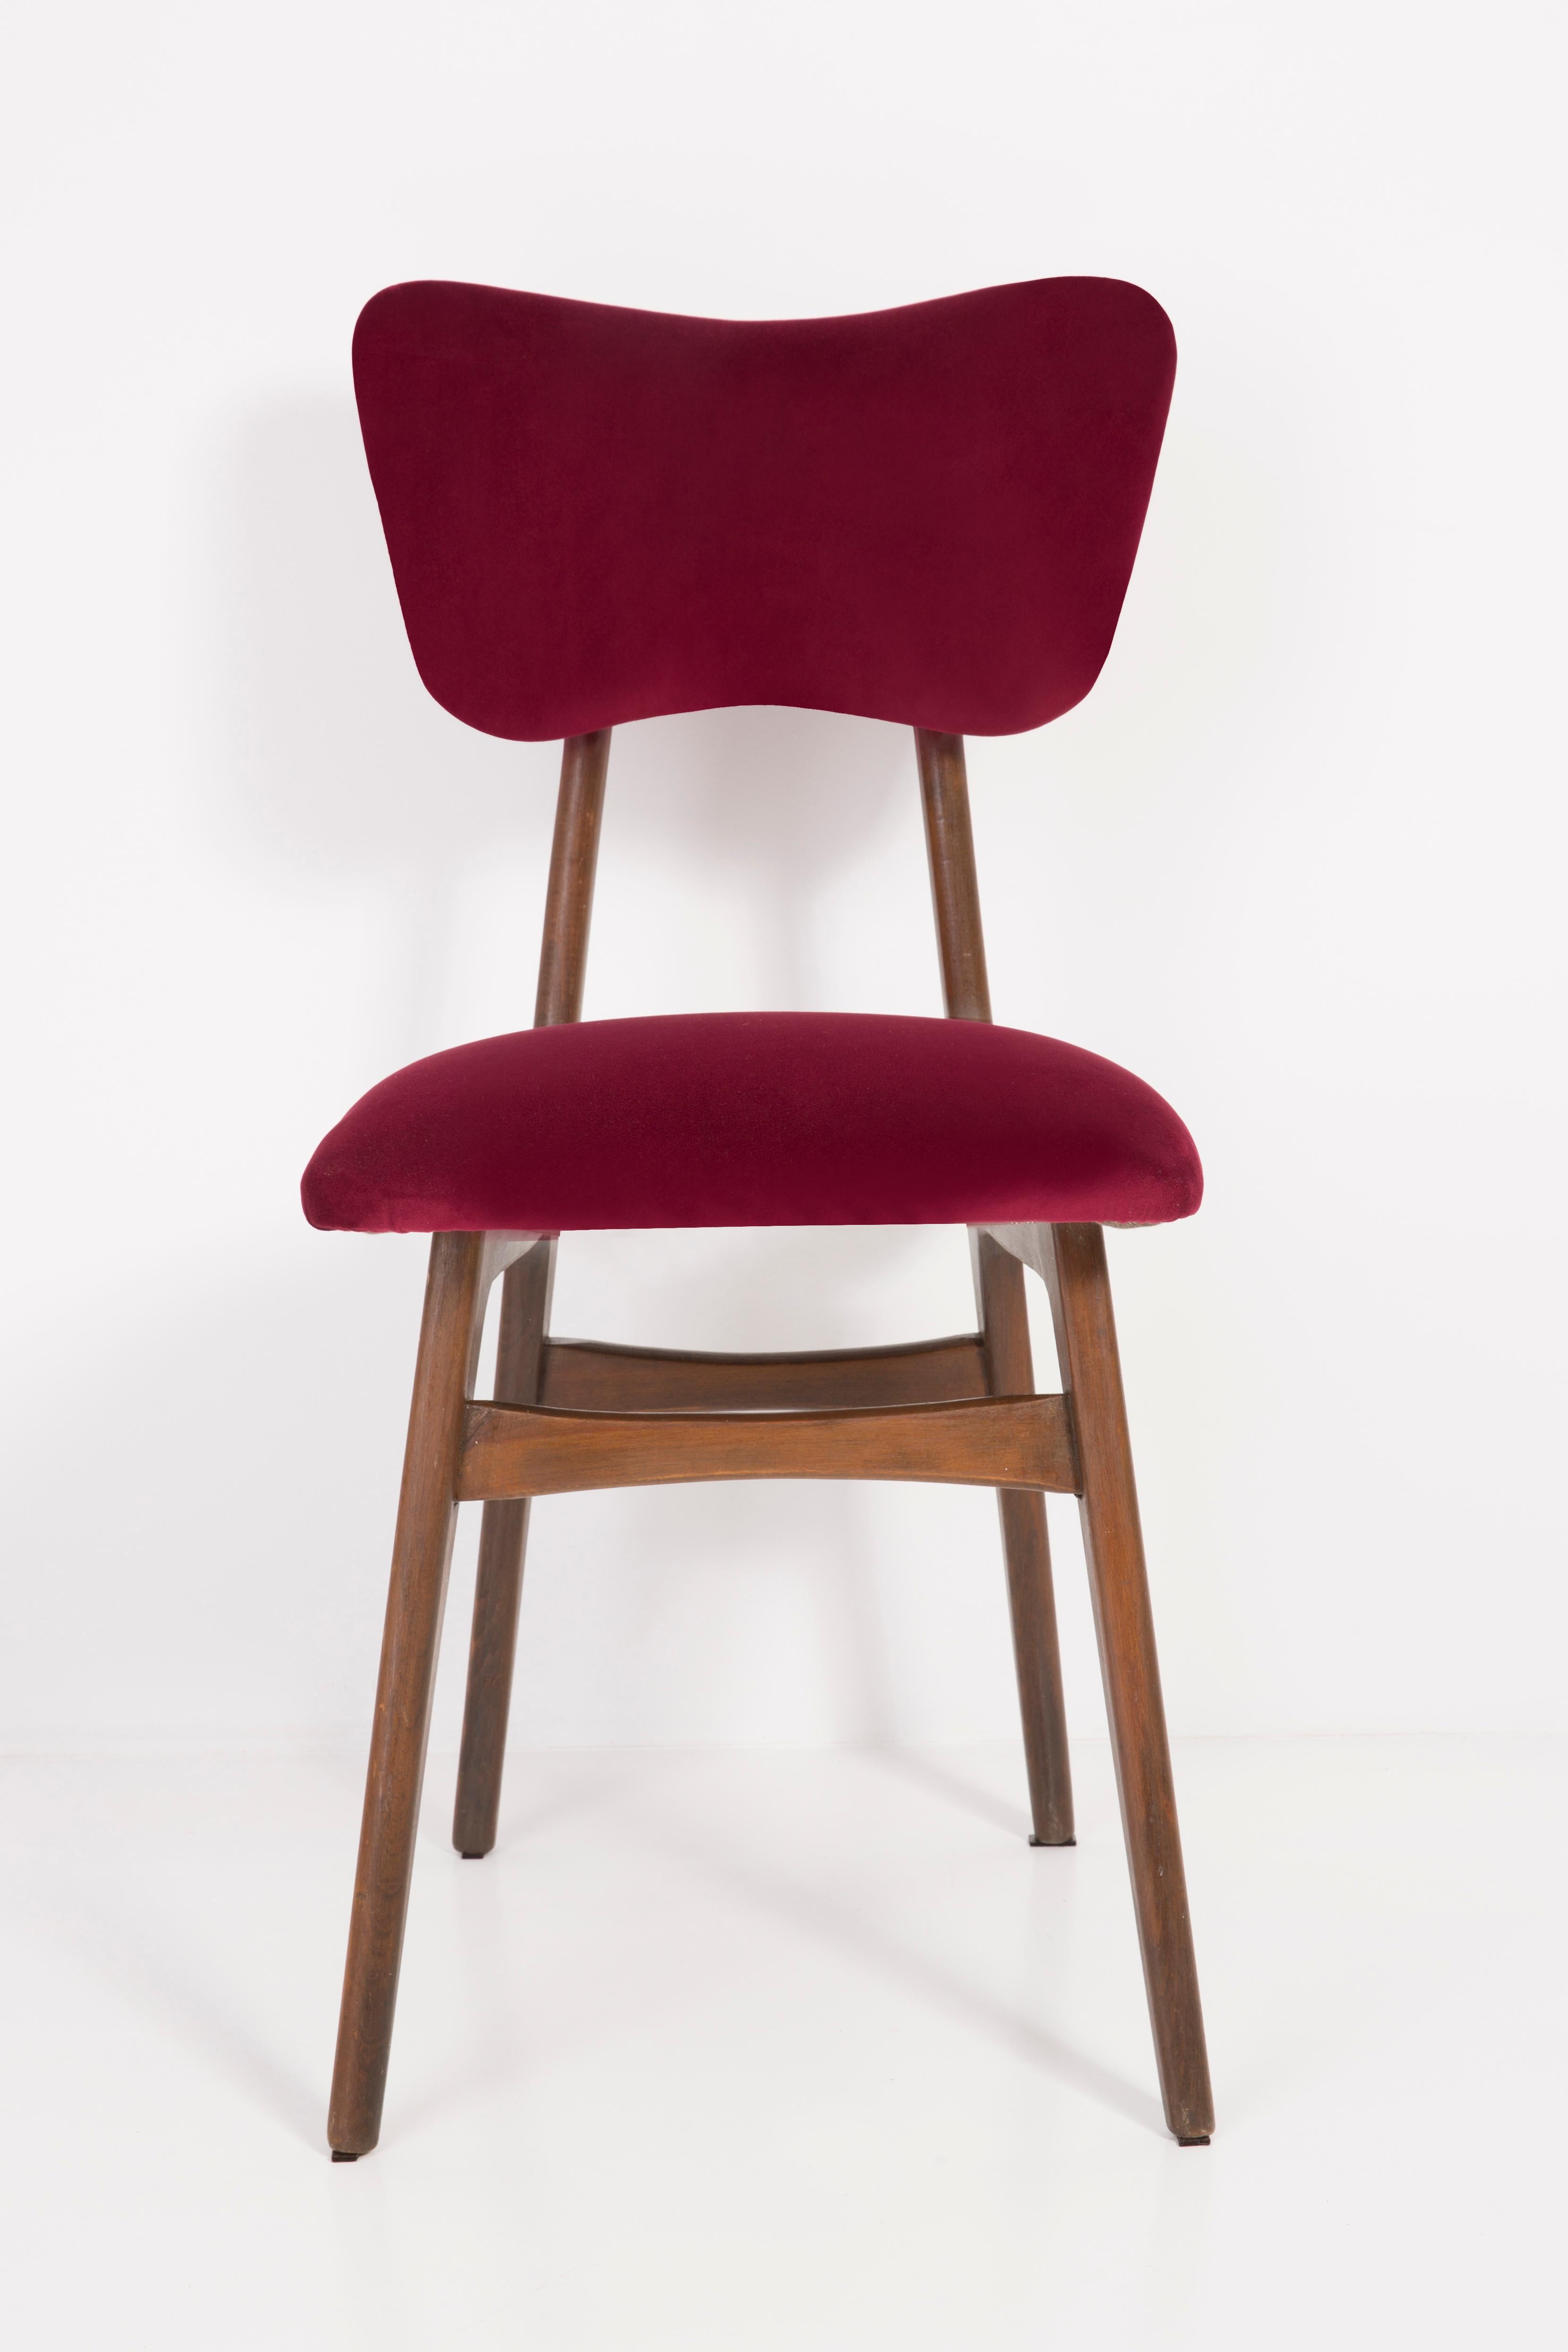 Stühle entworfen von Prof. Rajmund Halas. Hergestellt aus Buchenholz. Der Stuhl wurde komplett neu gepolstert, die Holzarbeiten wurden aufgefrischt. Sitz und Rückenlehne sind mit burgunderrotem, strapazierfähigem und angenehm zu berührendem